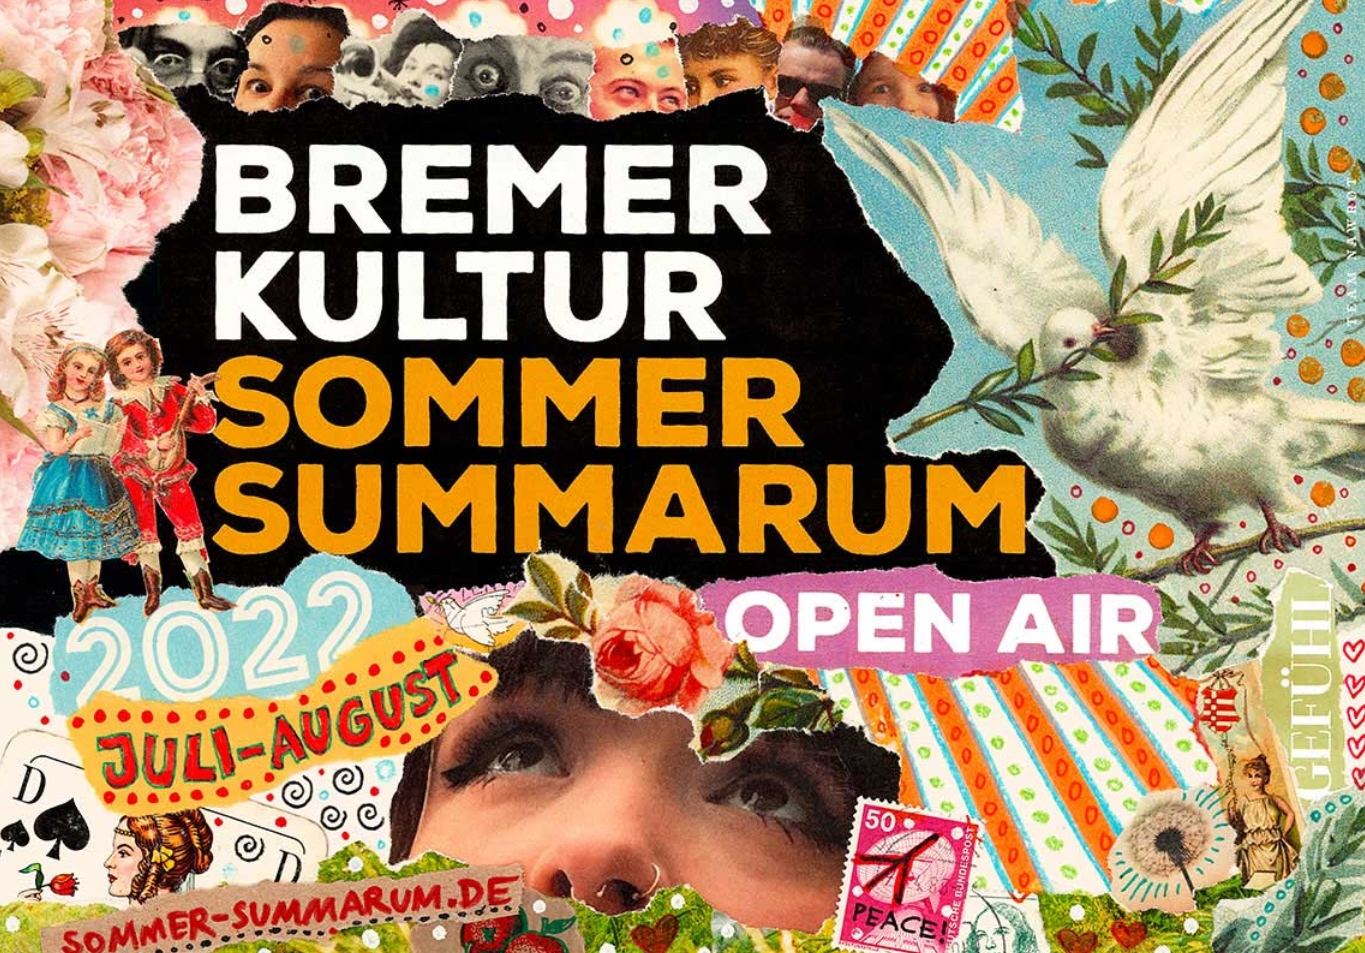 Bremer Kultur Sommer Summarum